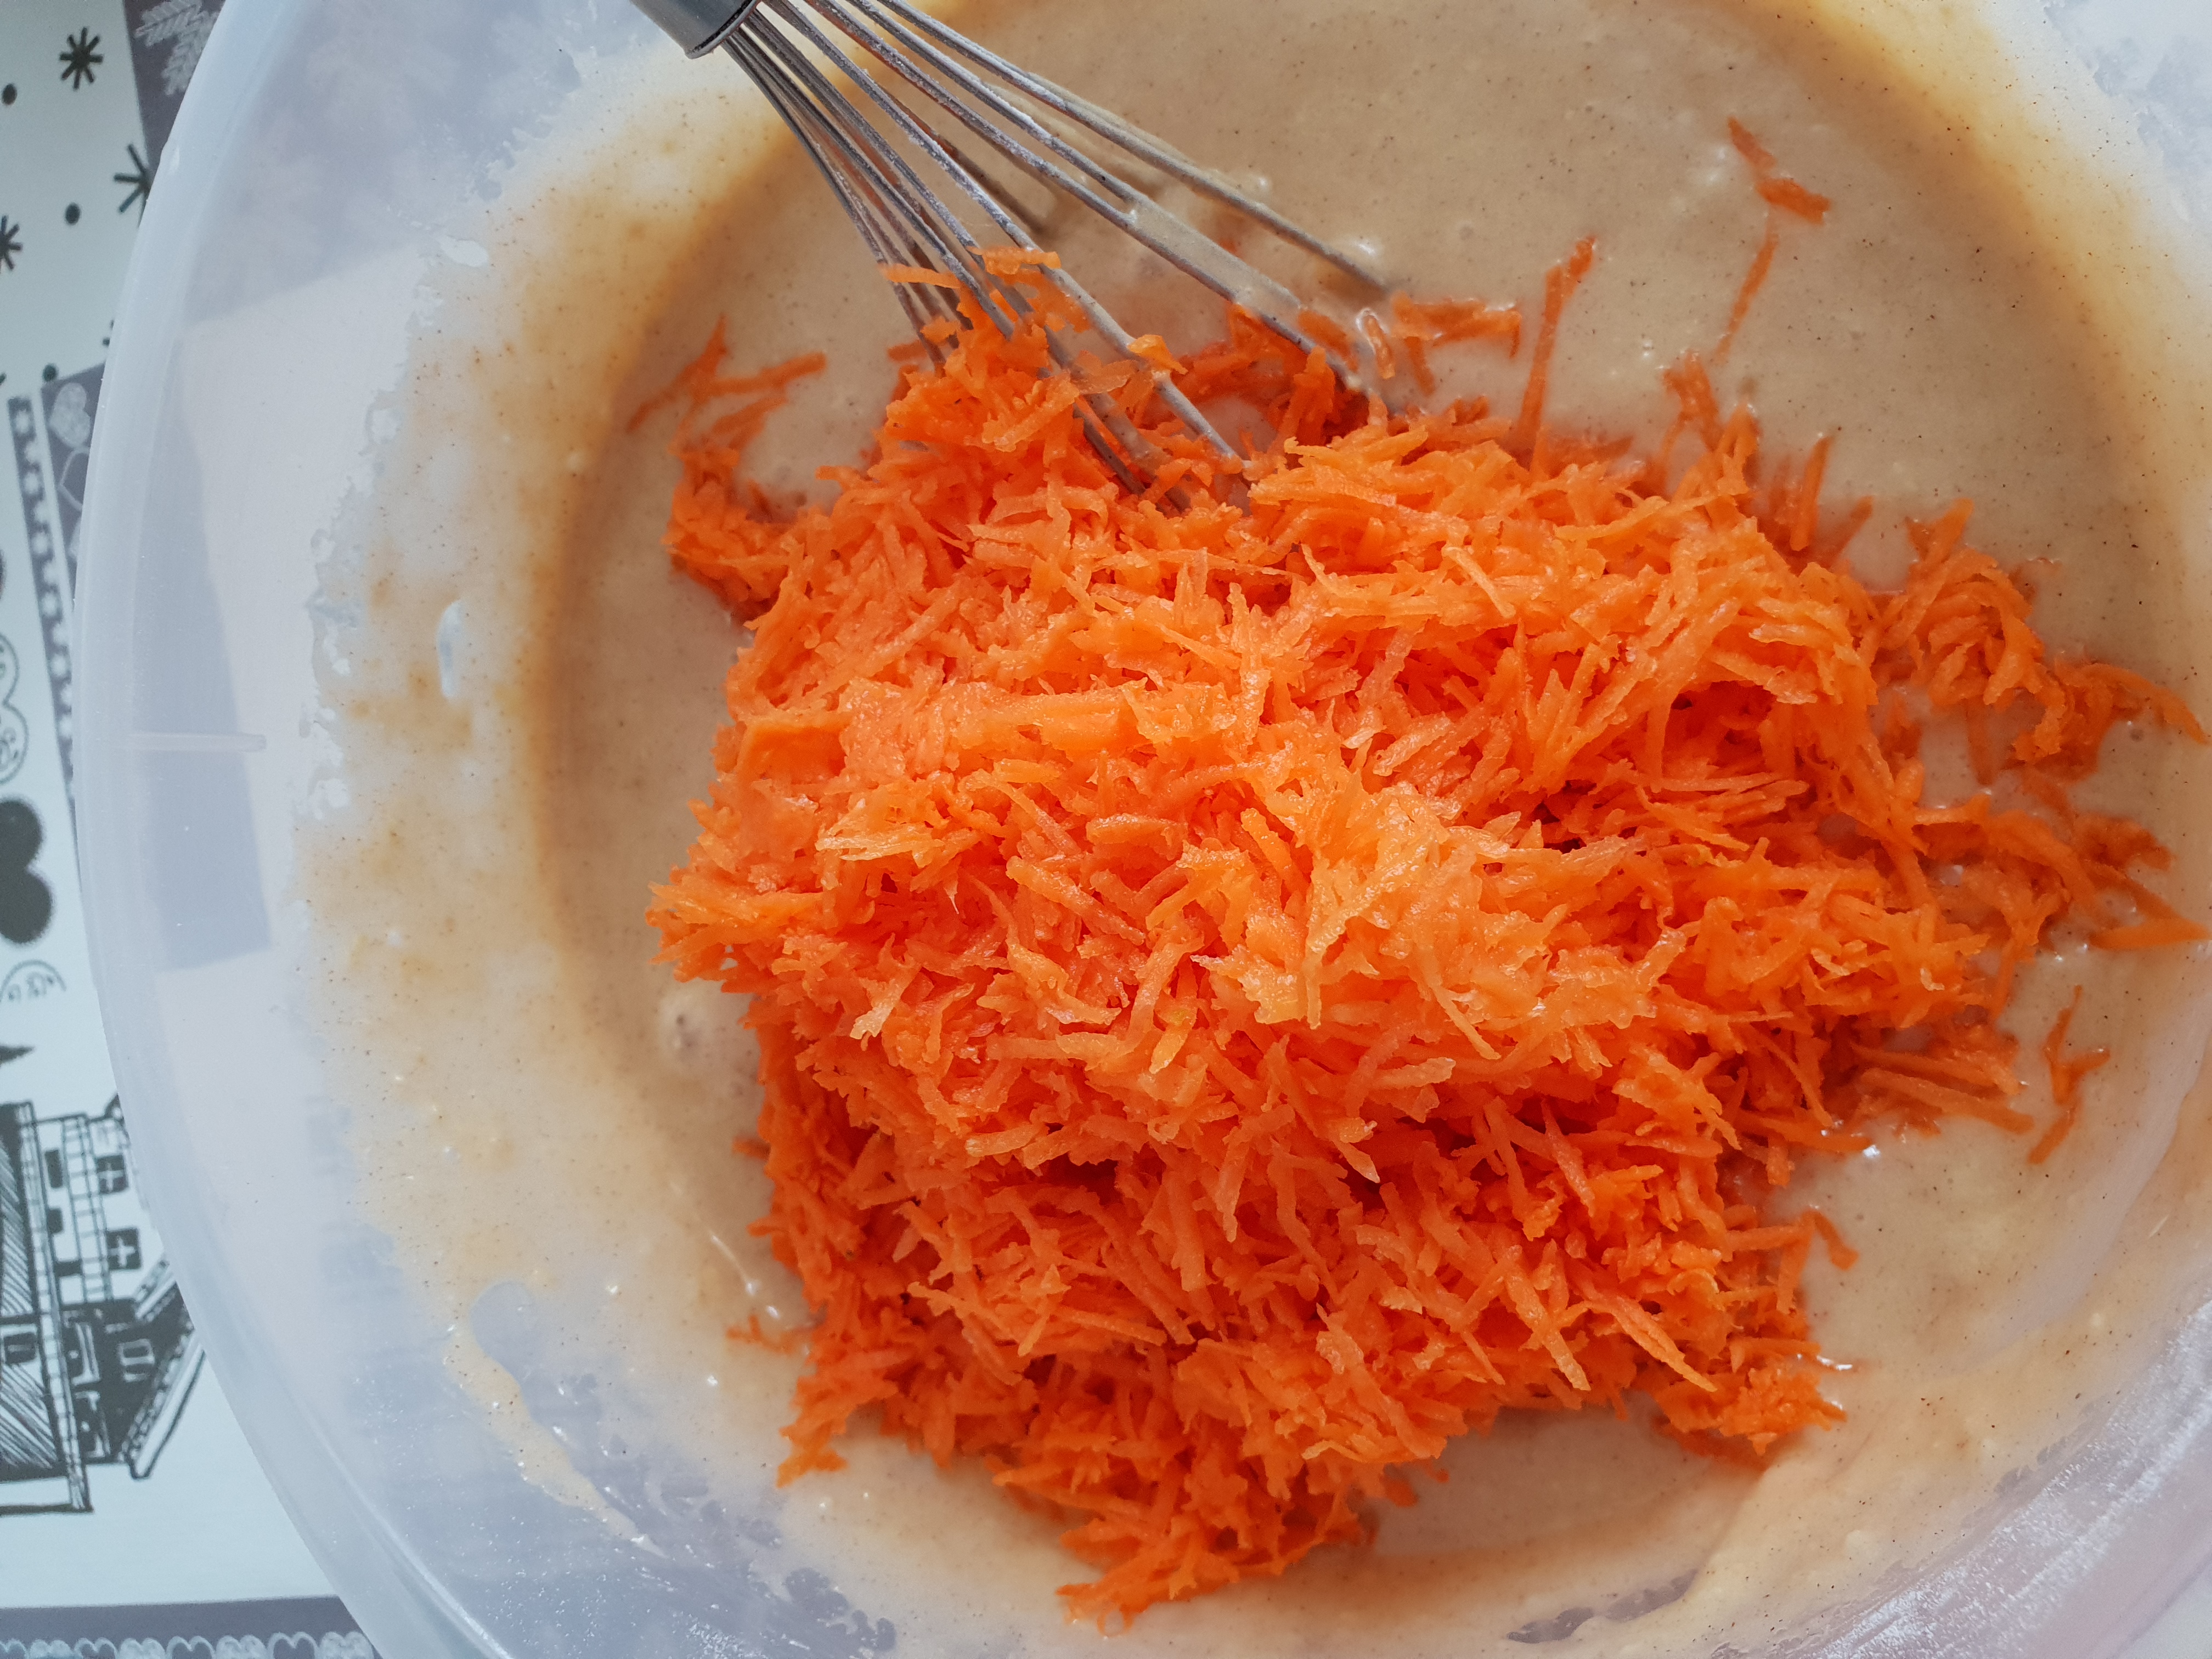 Desert tort cu morcovi - Carrot cake